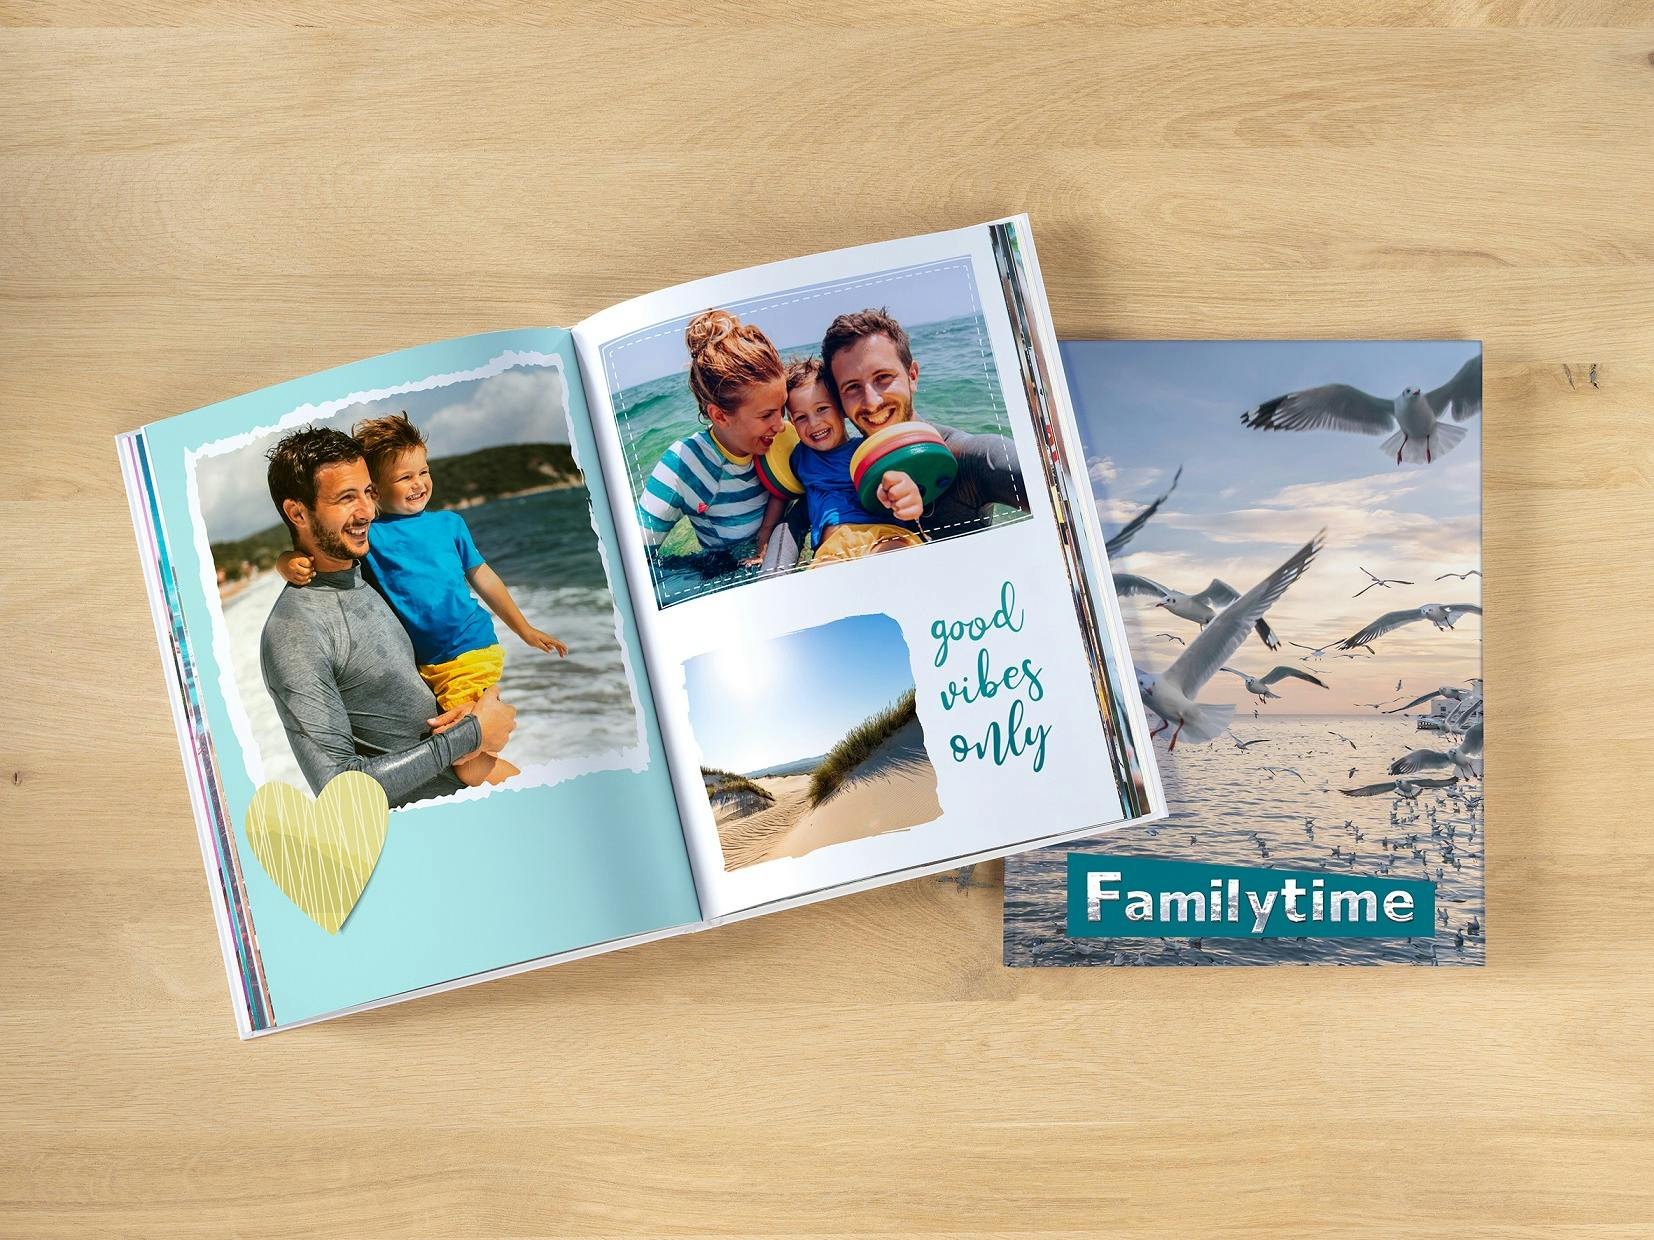 Pixum Fotobuch im Hochformat als Reisefotobuch mit Familienbildern am Meer